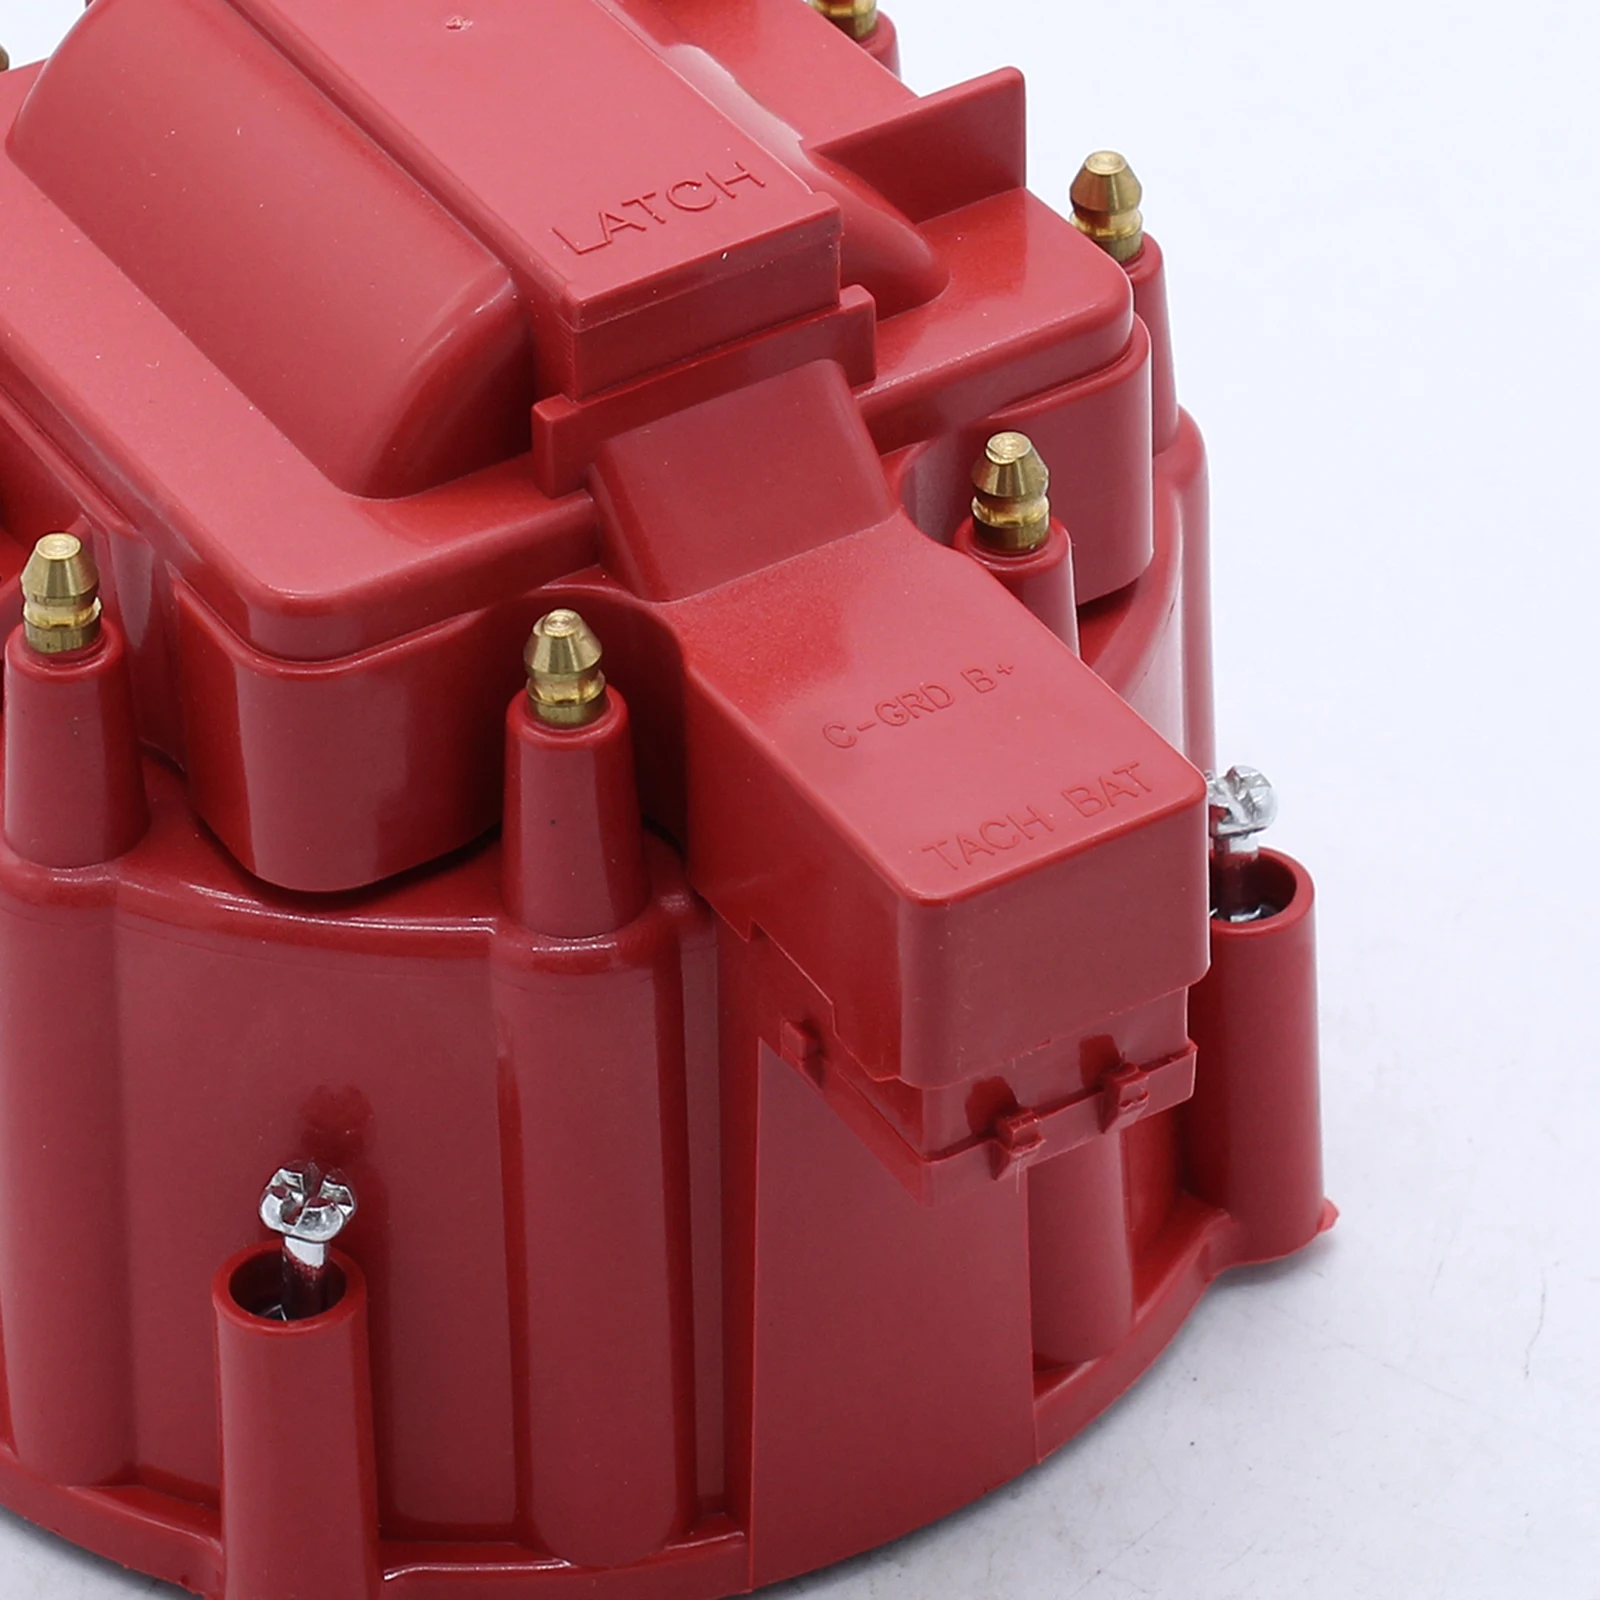 Red Distributor  Rotor Kit 8416 For SBC  305 350 454 Durable Polished